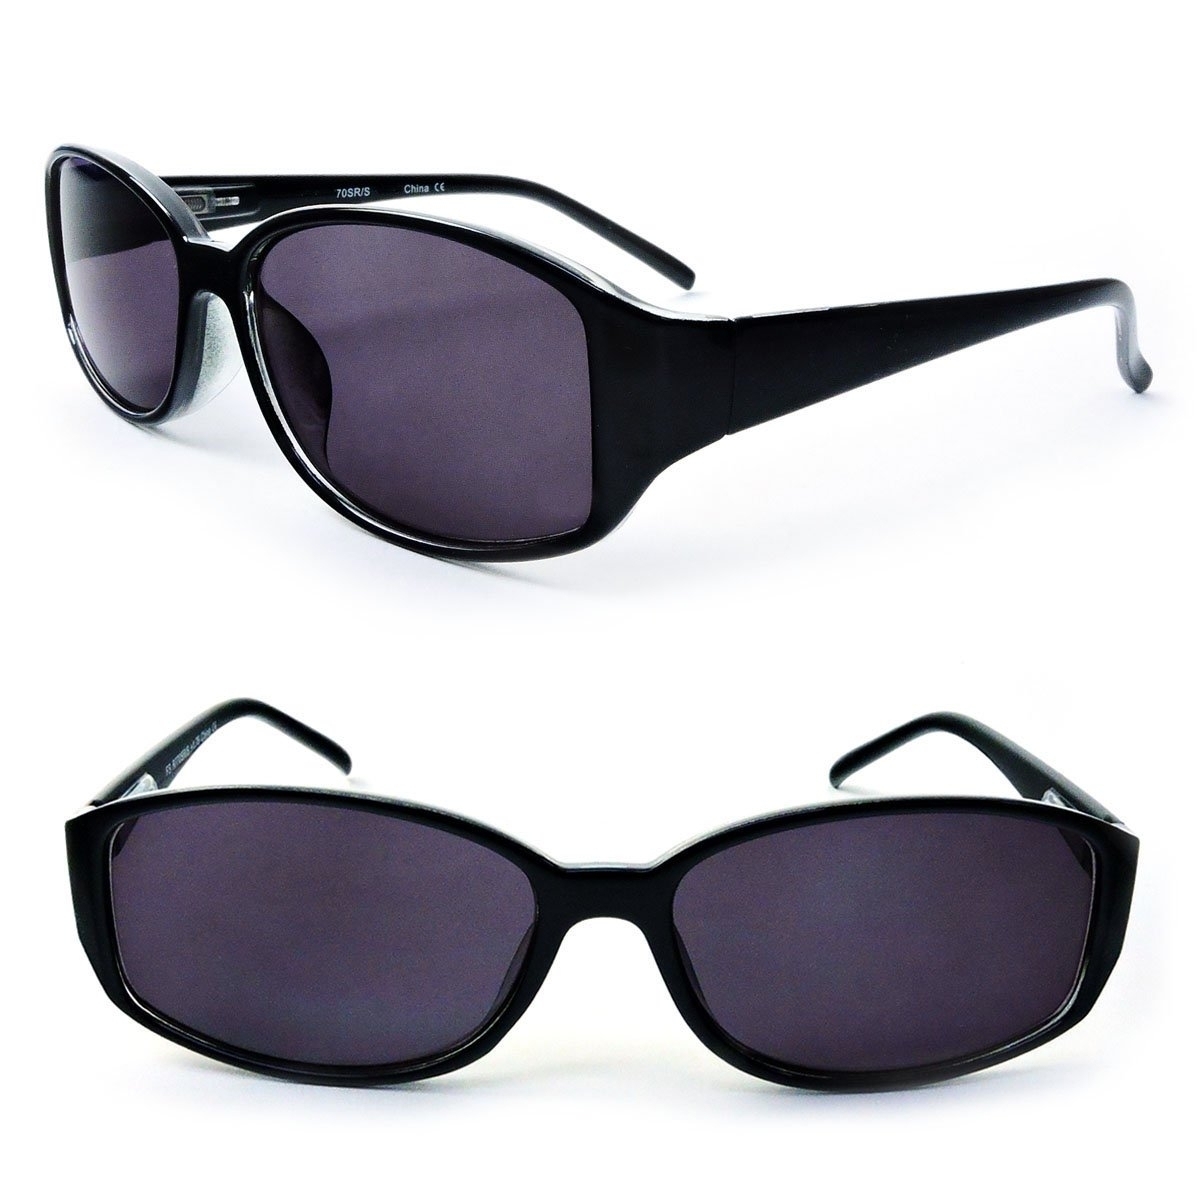 Classic Sun Readers Full Lens Spring Hinges Reading Sunglasses For Women - Black, +2.25